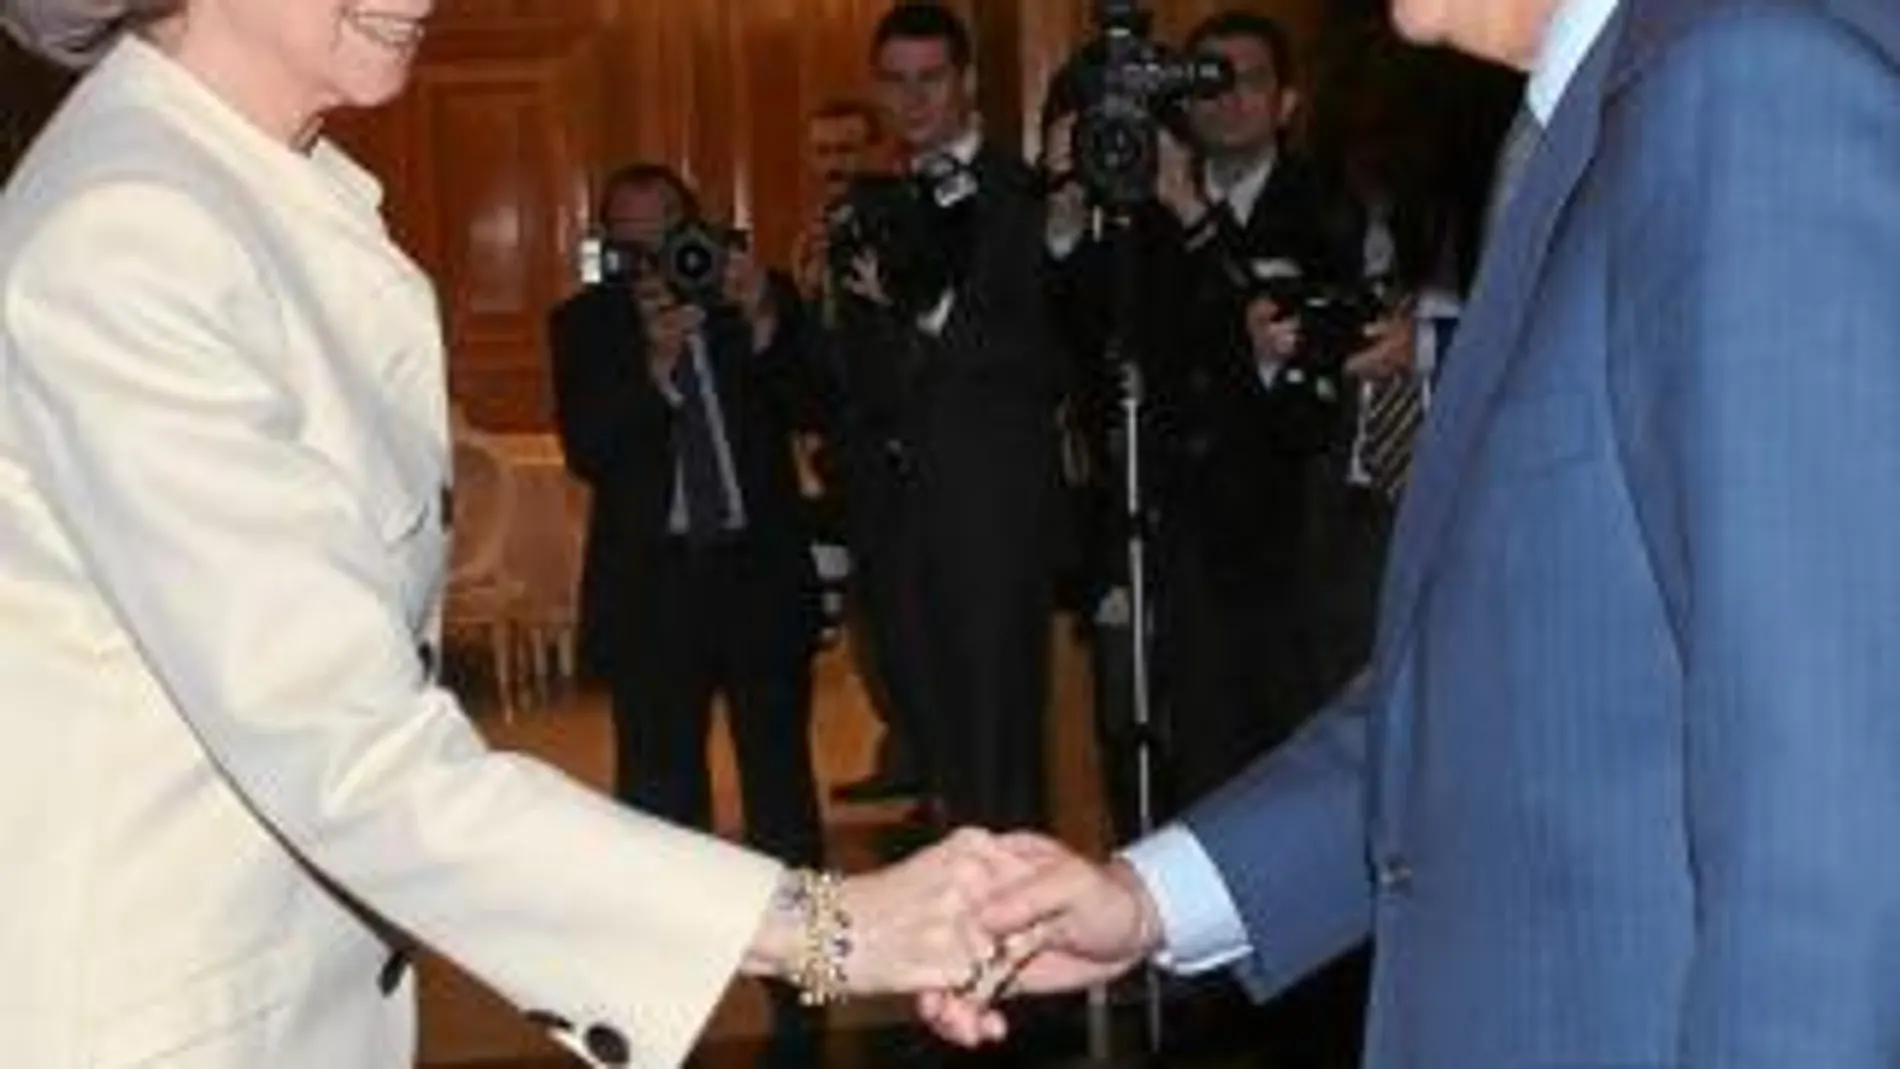 La Reina Doña Sofía saluda a Ignacio Garralda, presidente de la fundación Mutua Madrileña